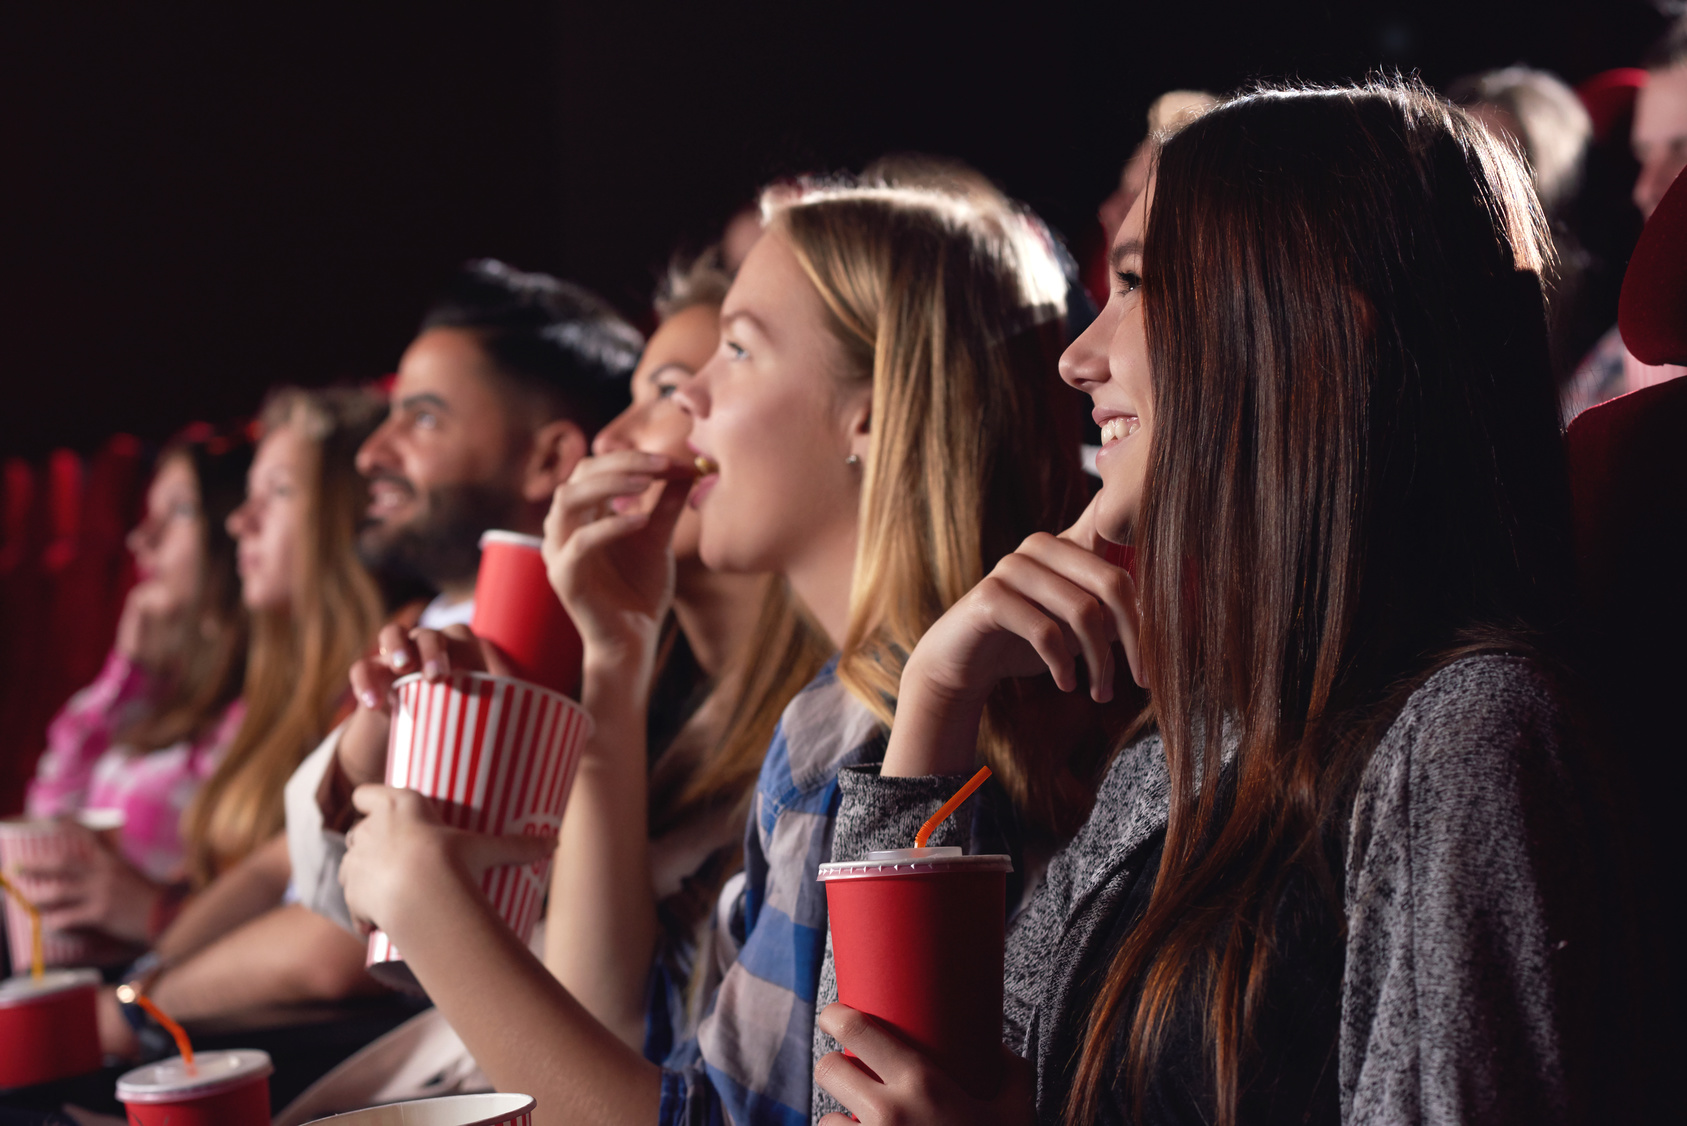 El cine, un medio de comunicación que necesita reinventarse: EEUU propone una tarifa plana para ir al cine 30 veces por 8 euros